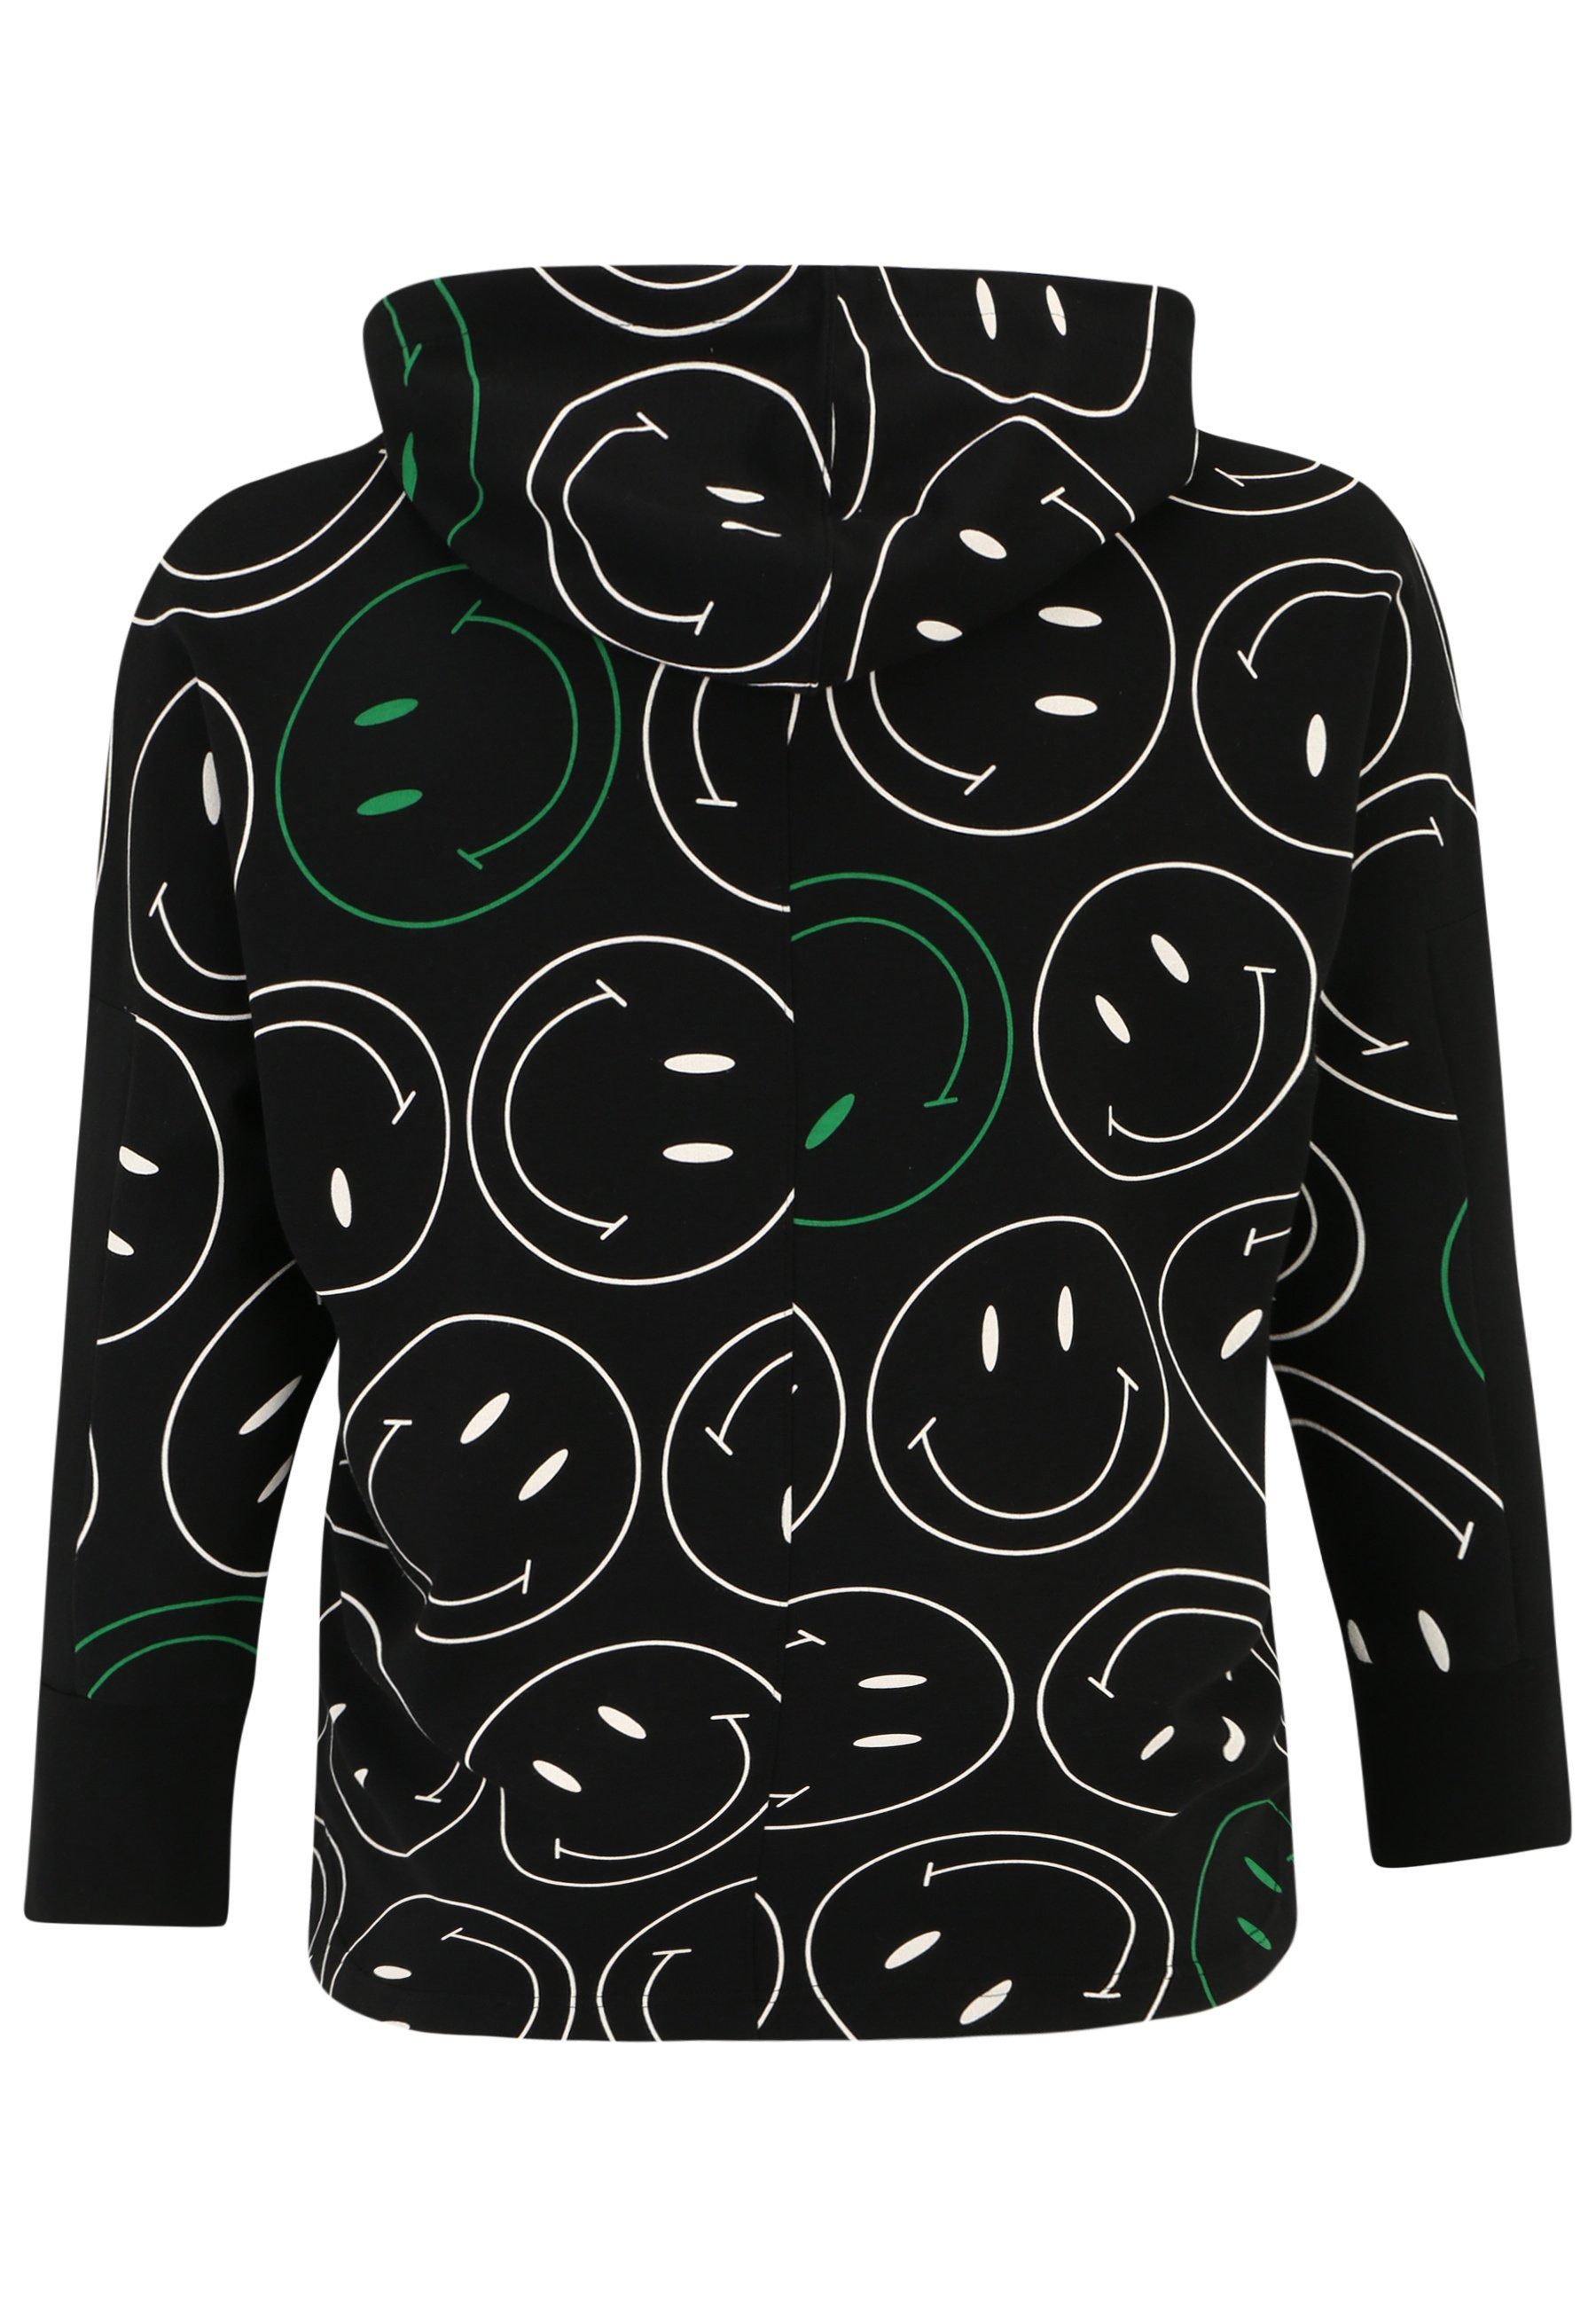 Doris Streich Longsleeve Sweatshirt Hoody Design Smiley-Print mit mit modernem und